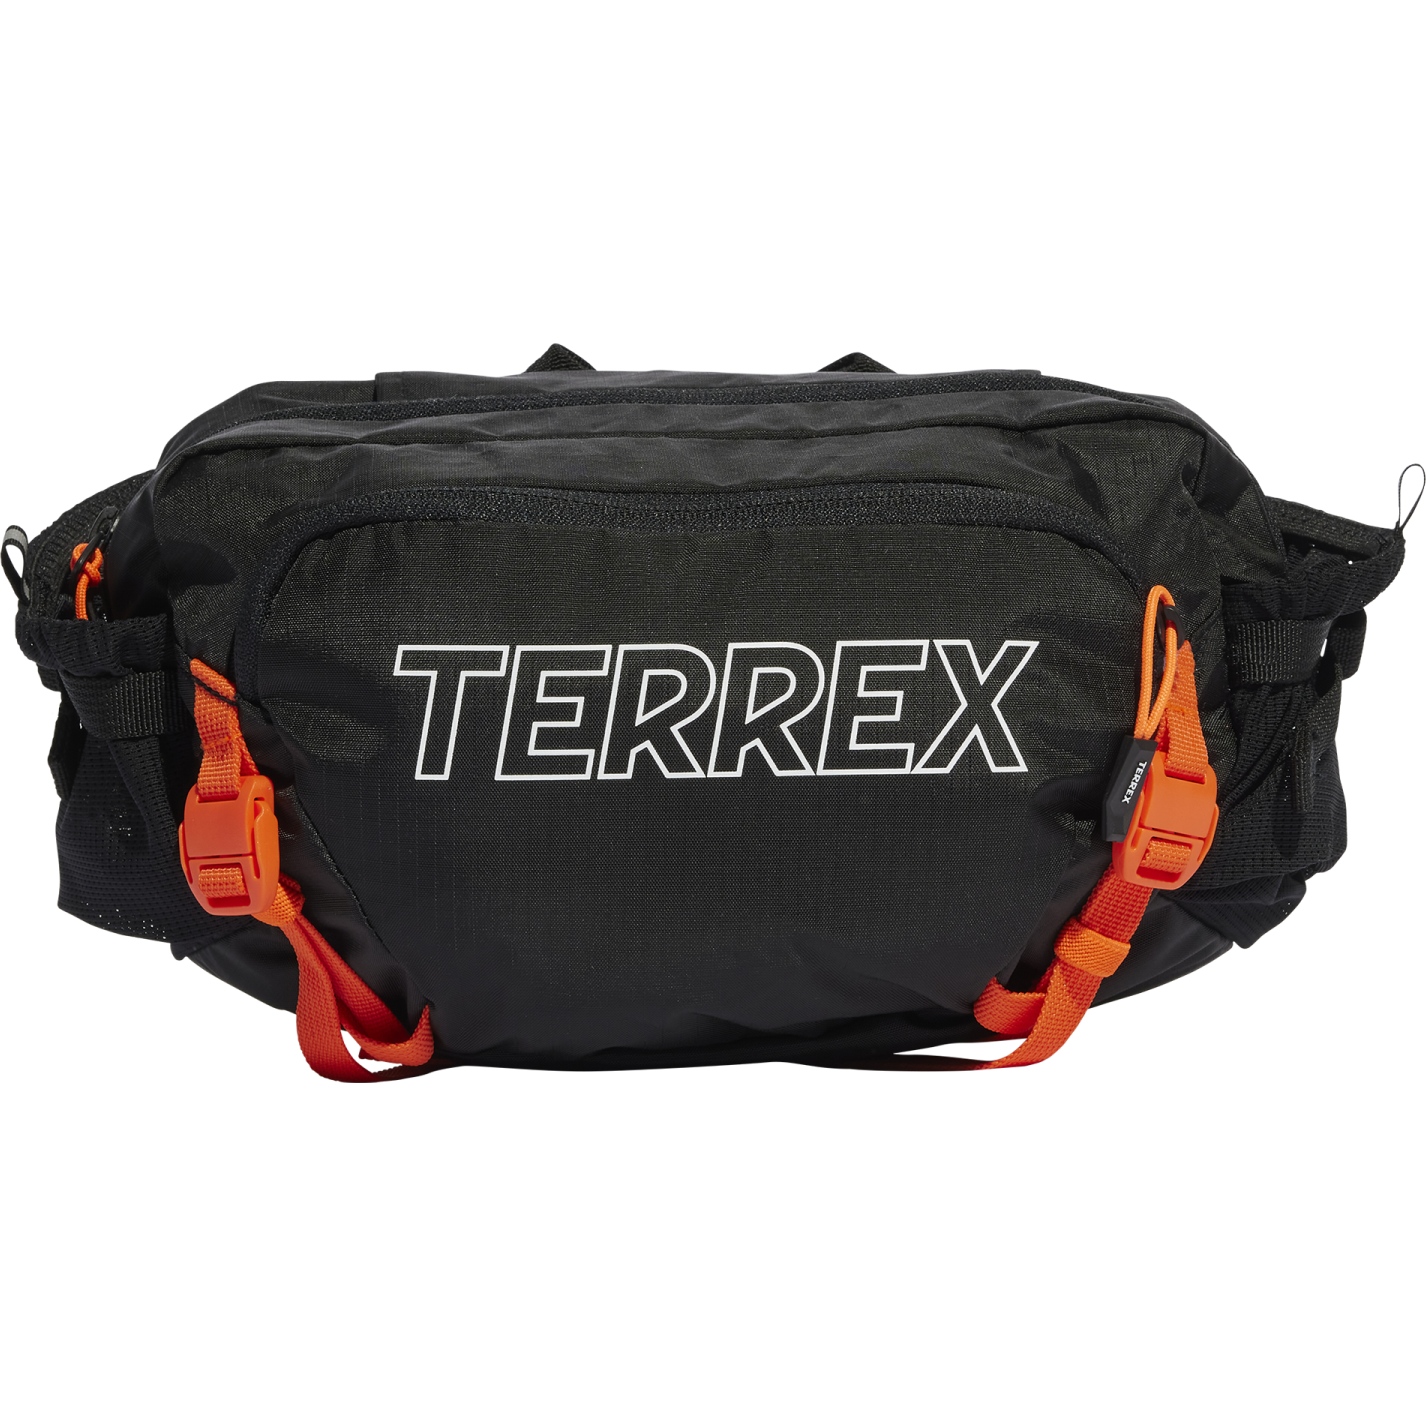 Produktbild von adidas TERREX Hüfttasche - black/white/impact orange IN4659